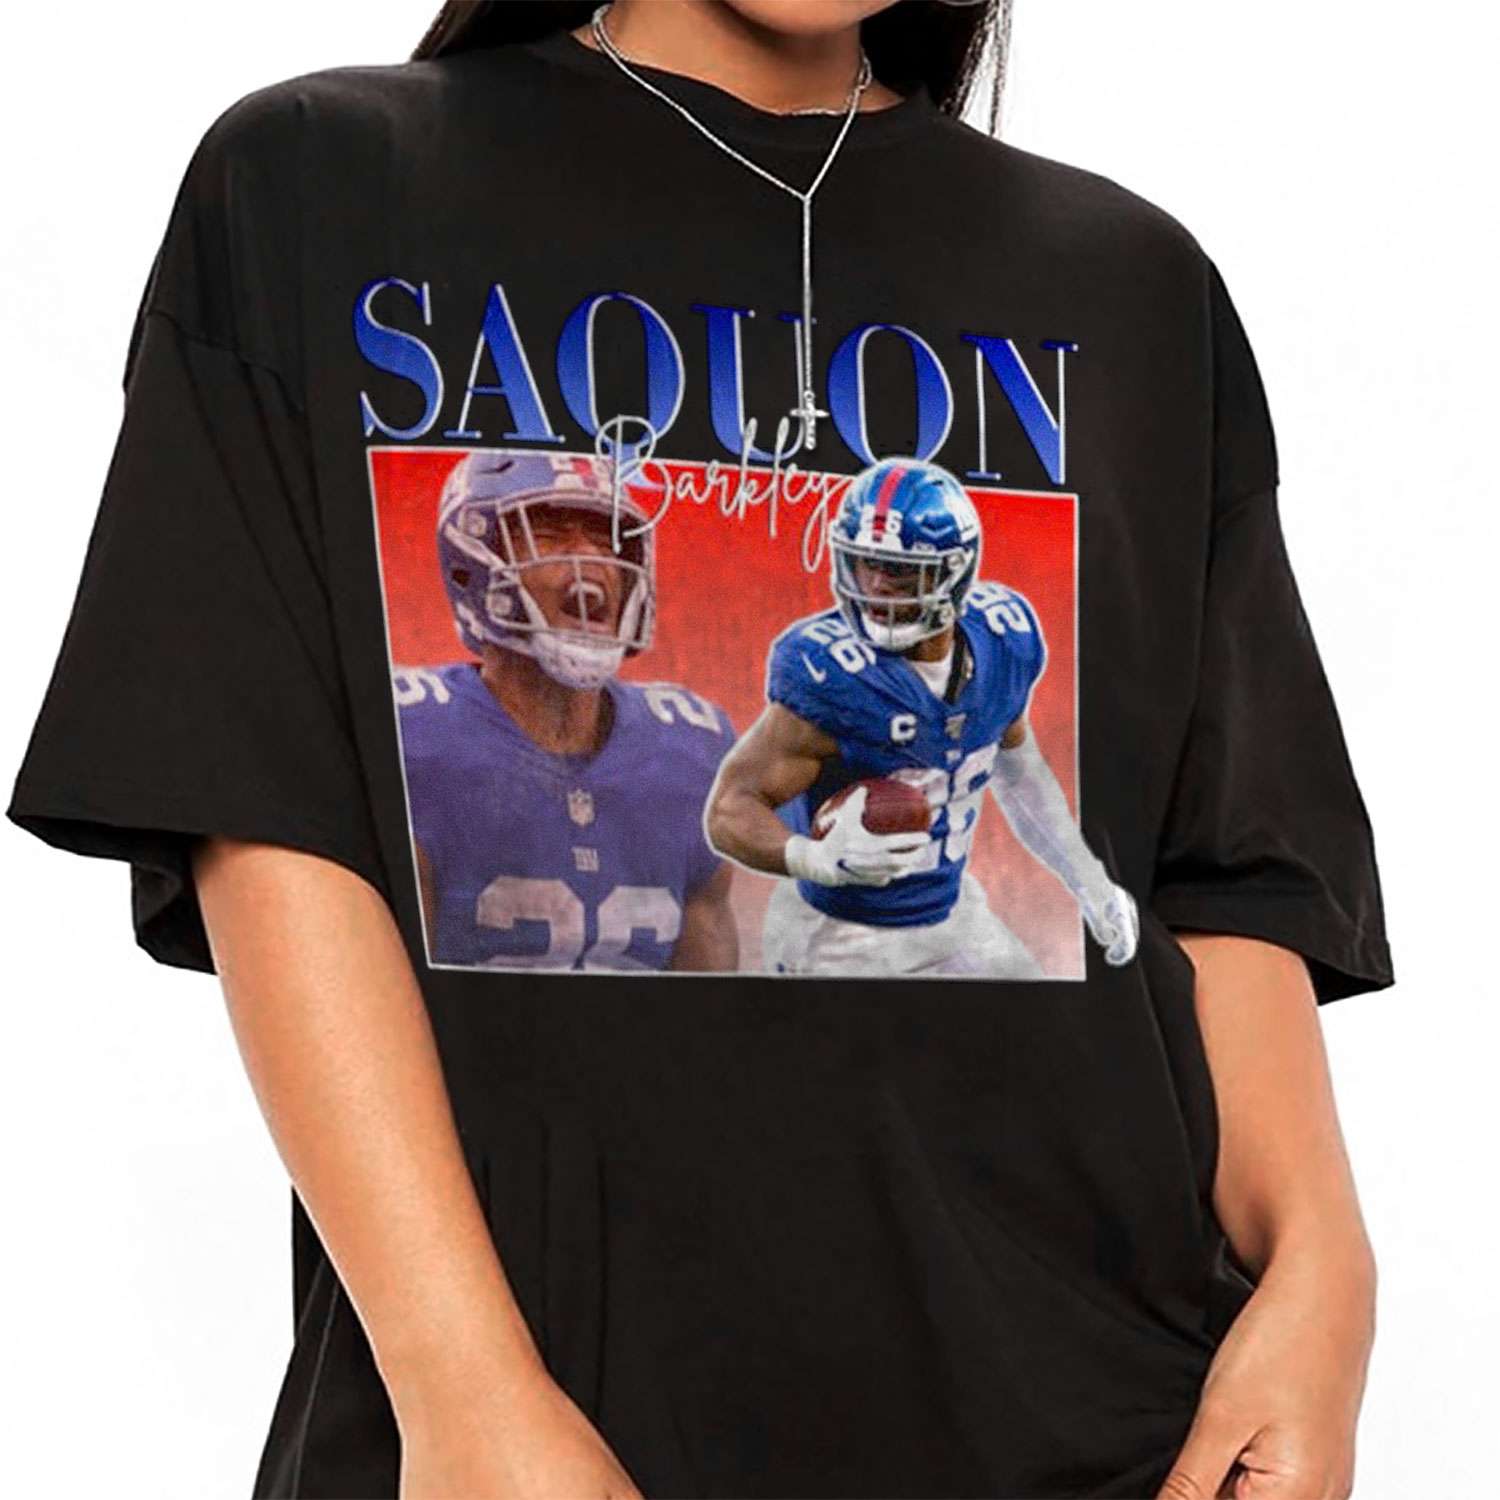 Saquon Barkley Bootleg Style New York Giants Shirt